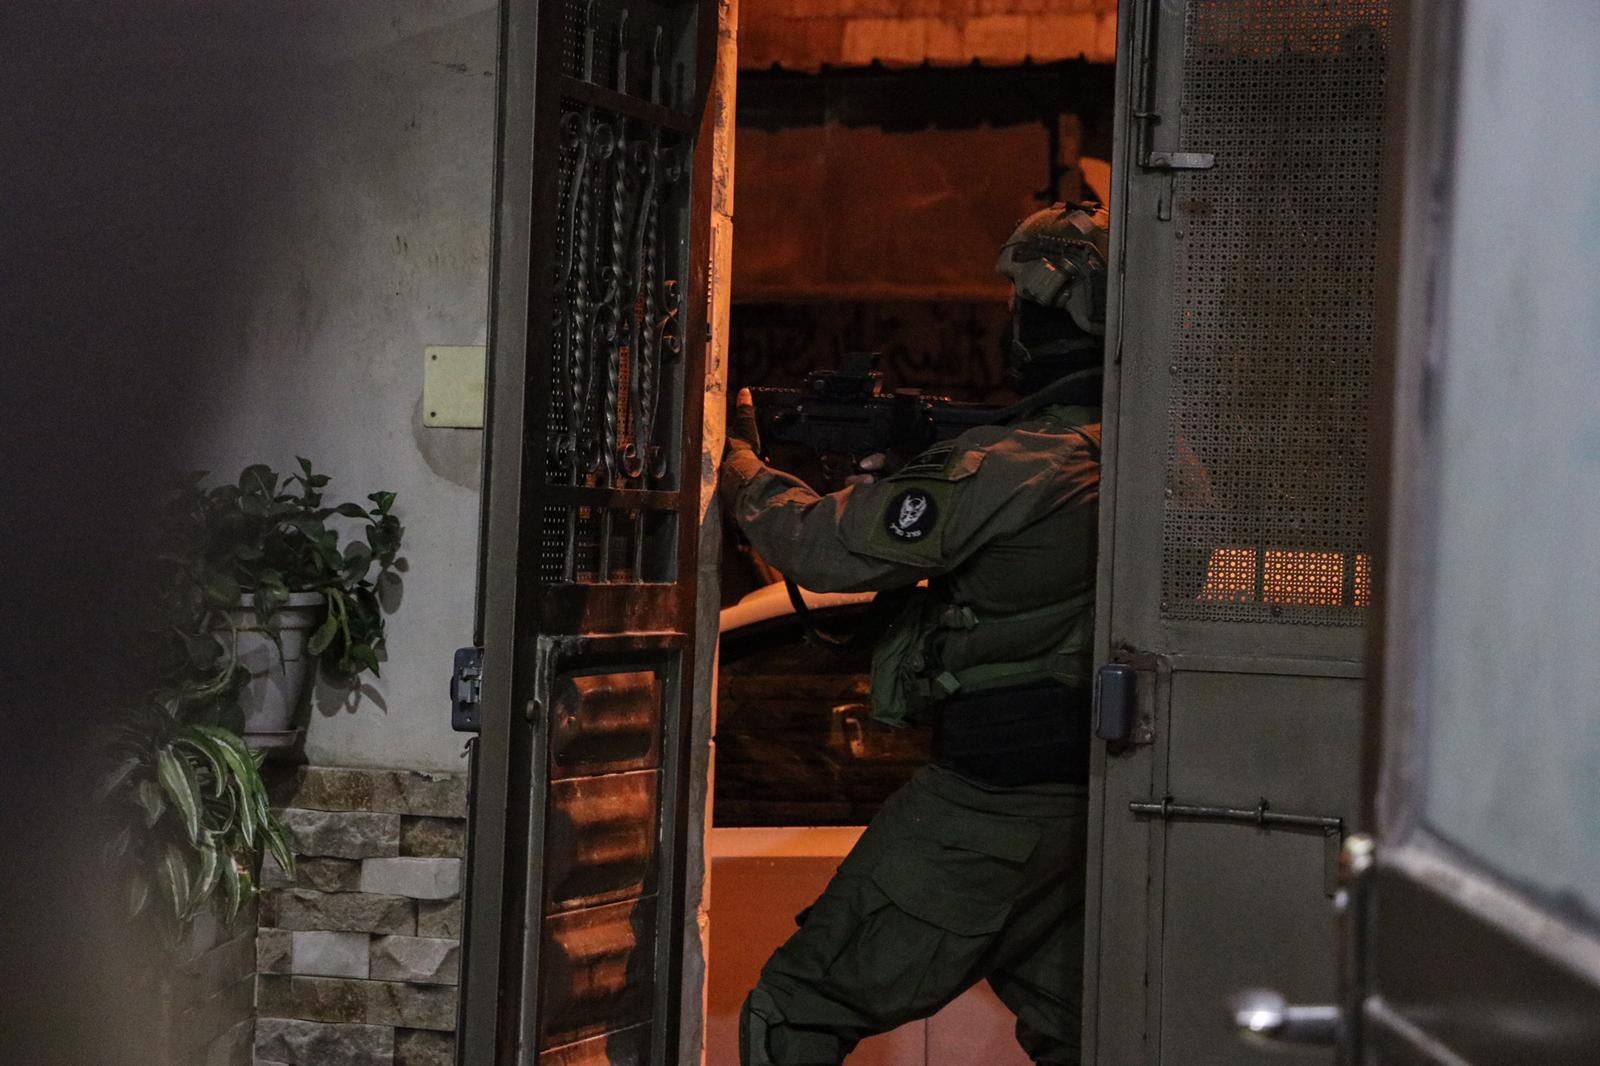 صور نشرها الجيش الاسرائيلي لعمليات اعتقال نشطاء الكتلة الاسلامية